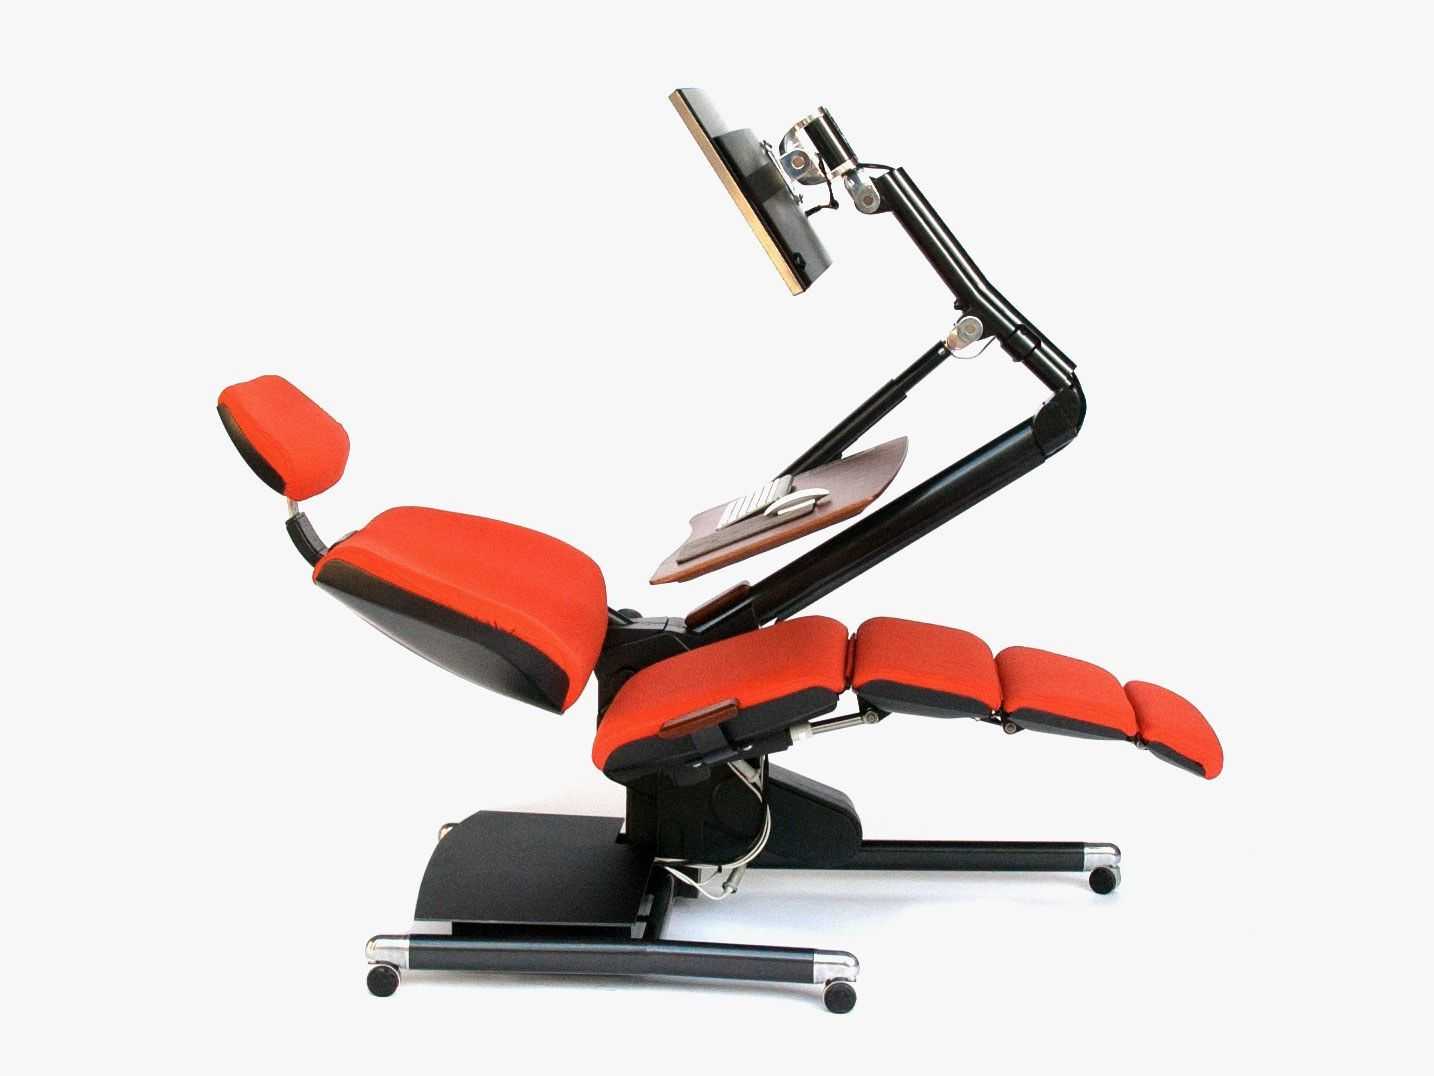 Ортопедические кресла для компьютера: рейтинг лучших моделей 2019 года и советы по выбору